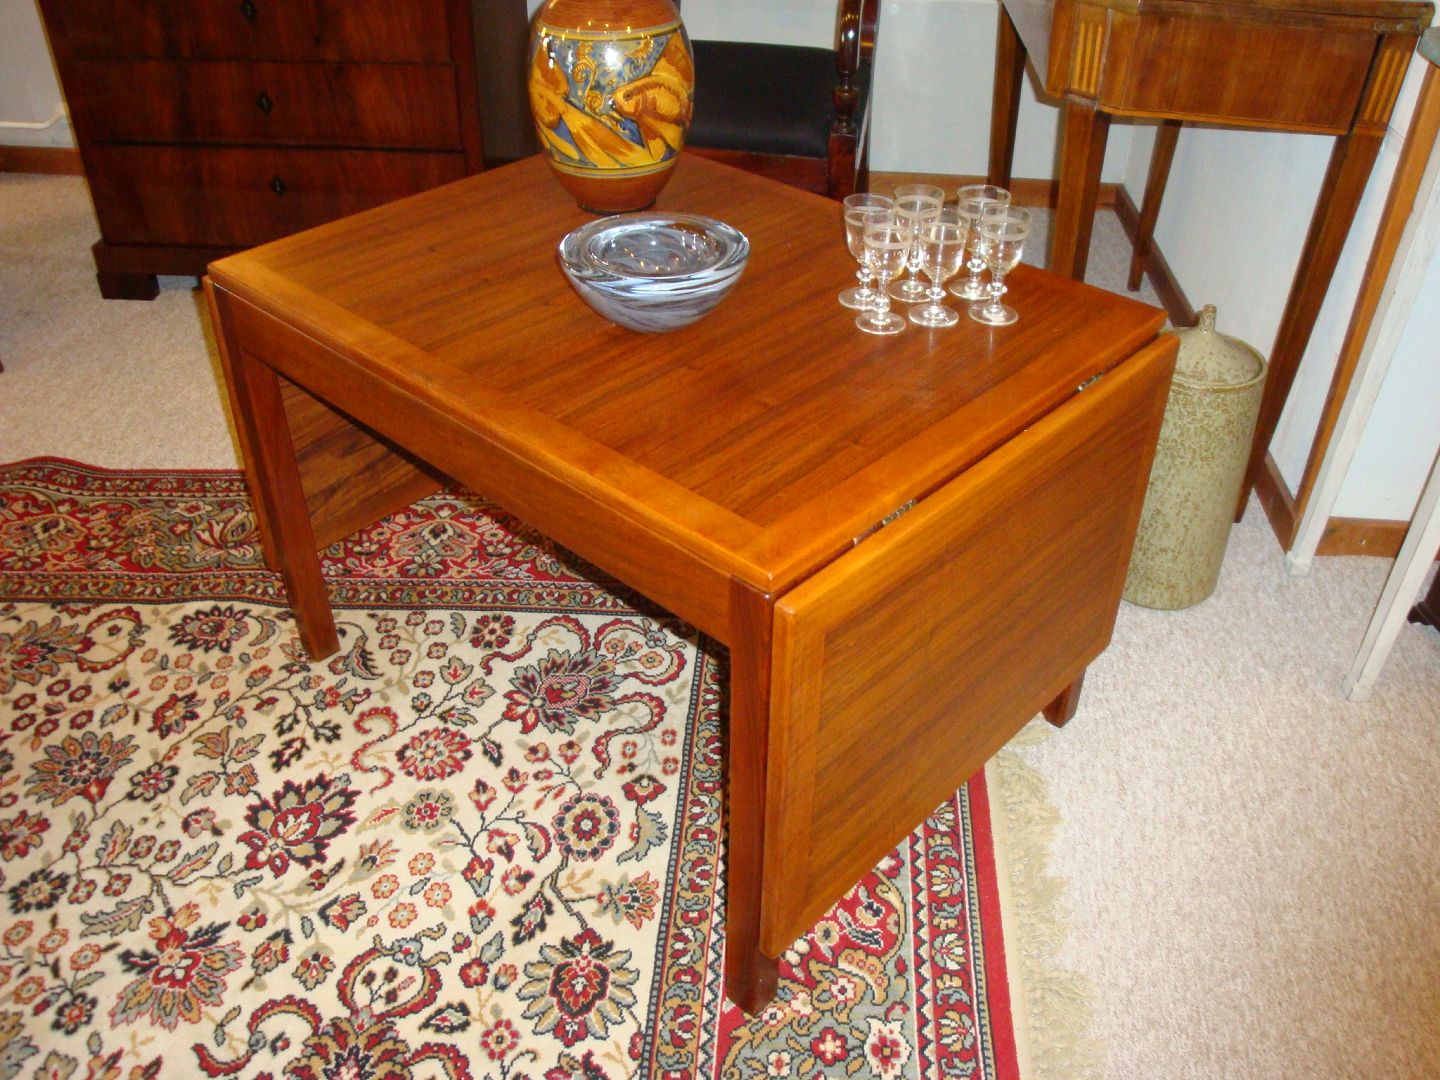 KAD ringen - Sofabord med dansk design af Børge Mogensen * 5000 m2 - Sofabord med klapper dansk af Børge Mogensen * 5000 m2 udstilling